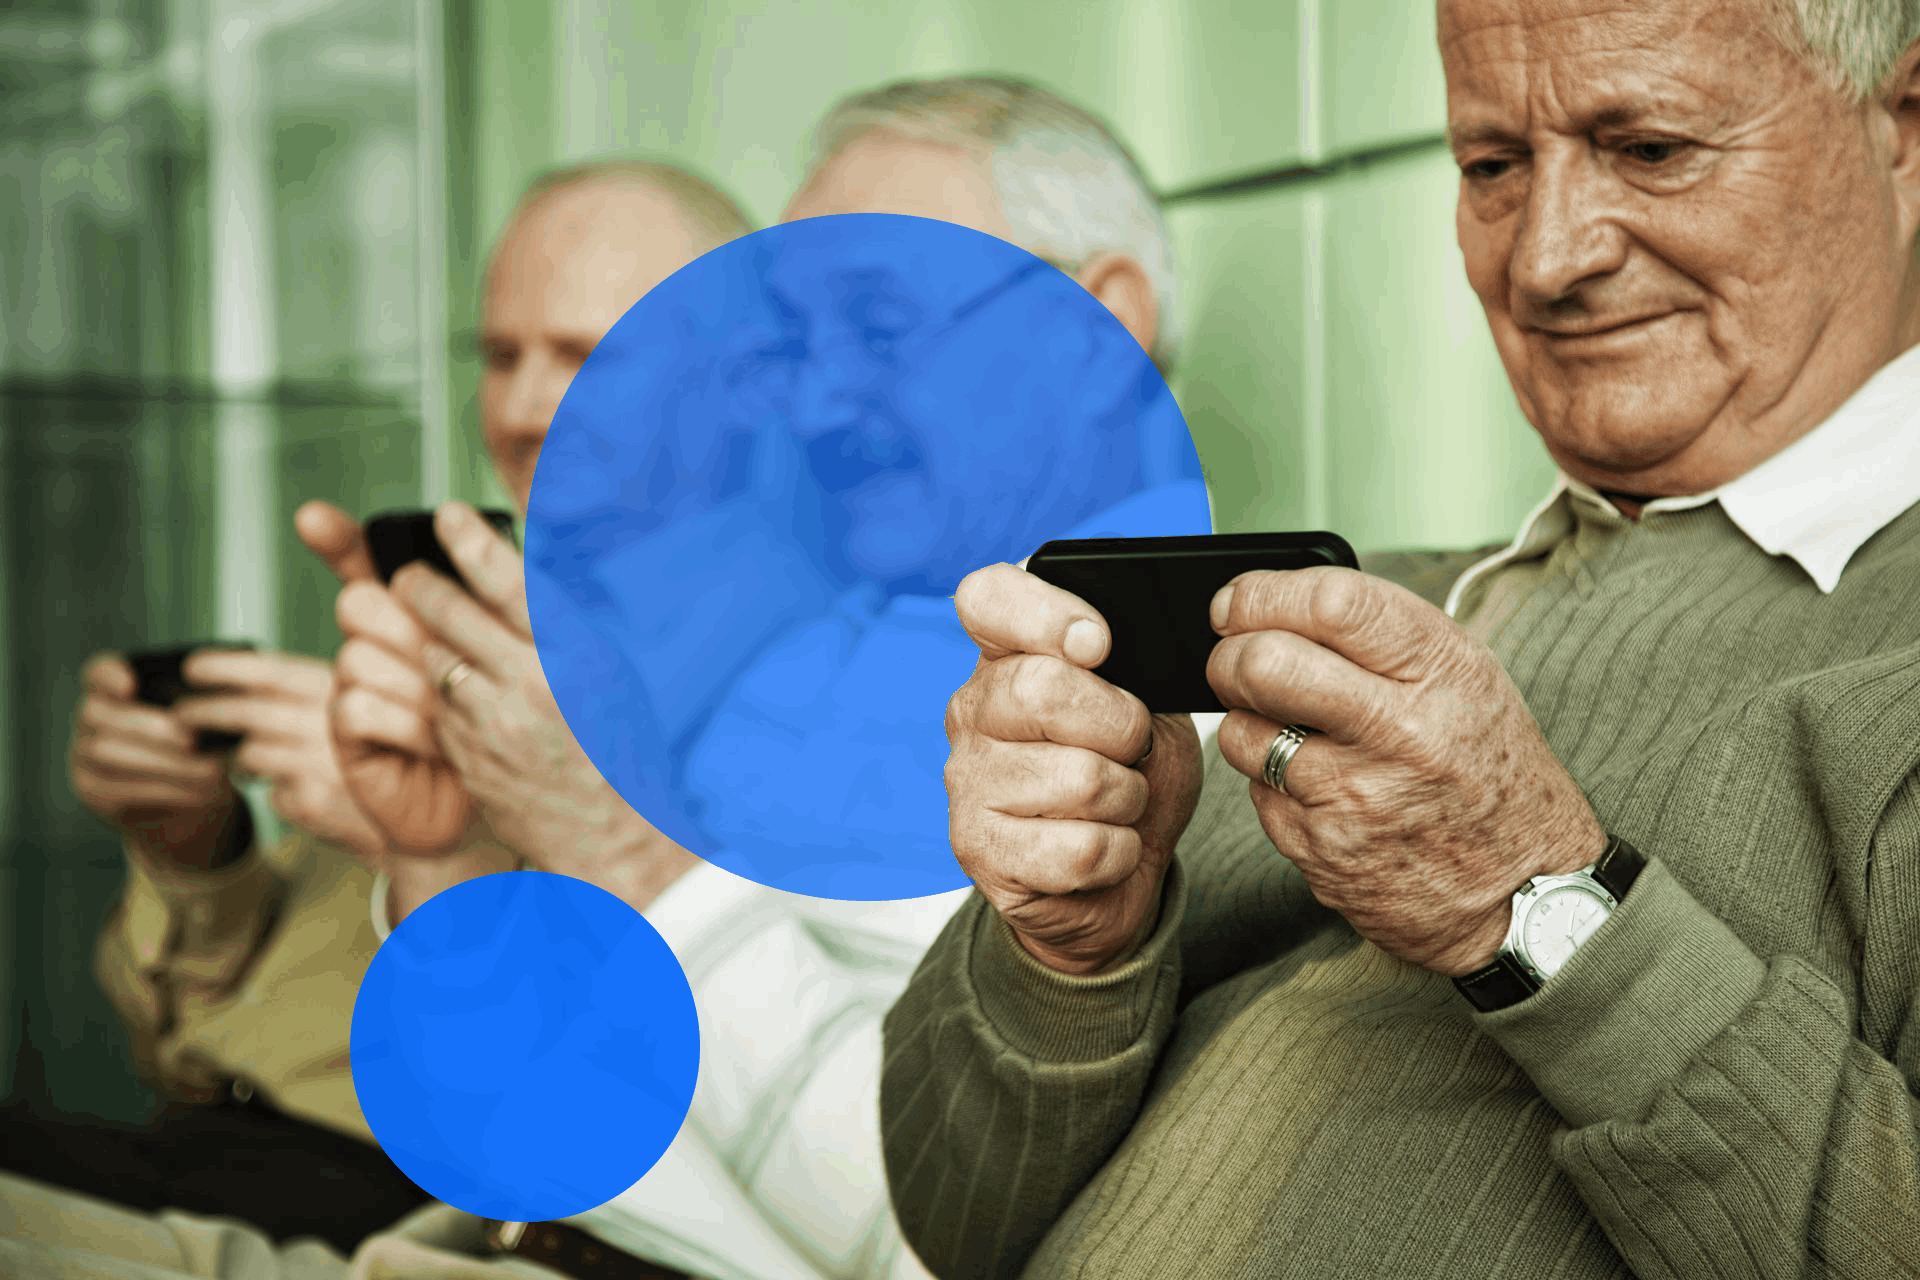 Configurar el móvil personas mayores ¿Cómo hacerlo?